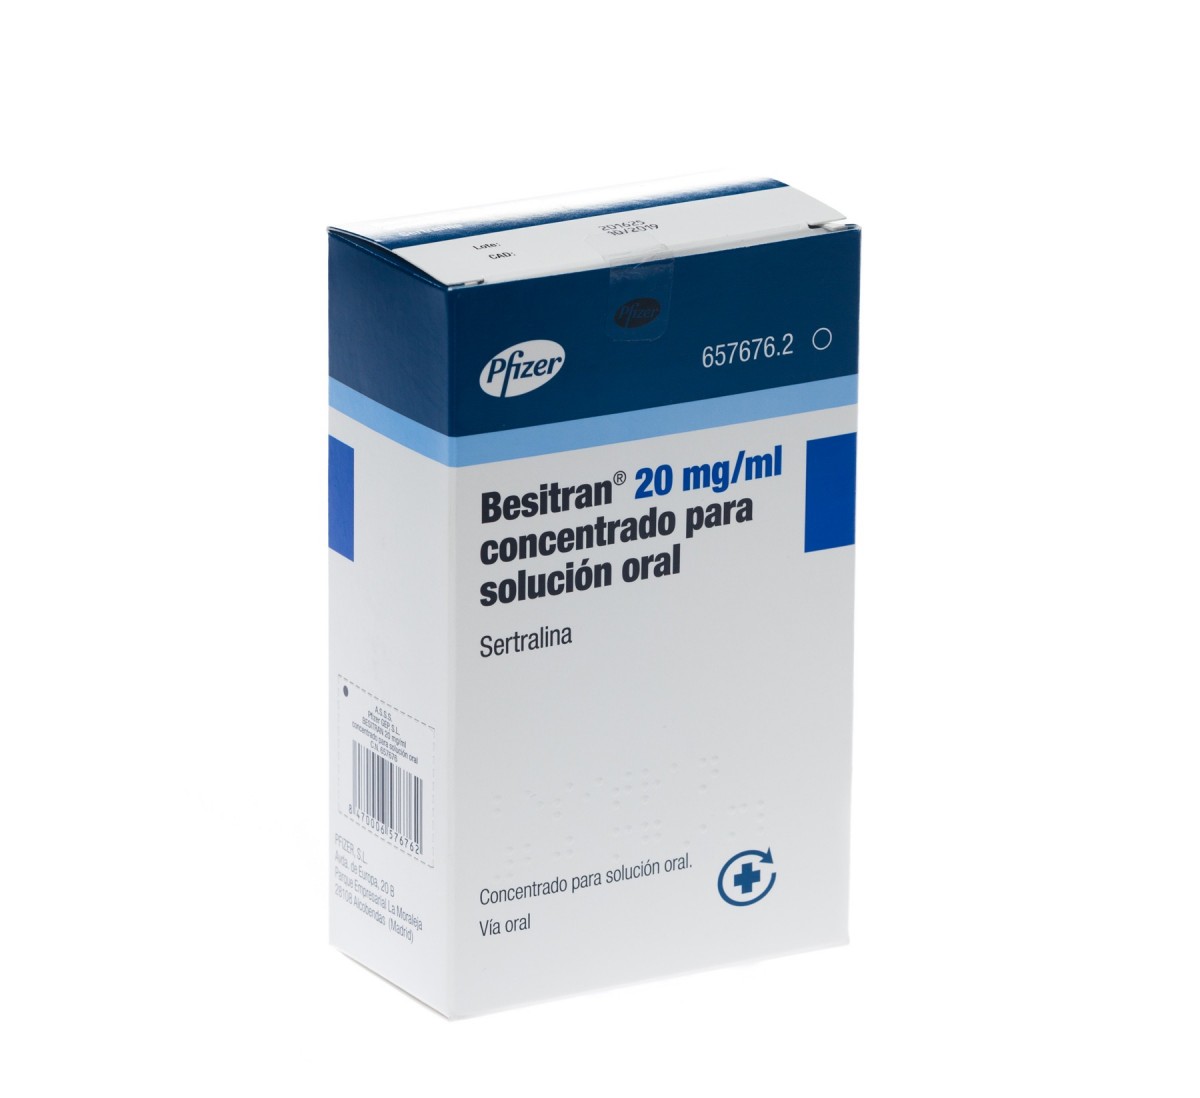 BESITRAN 20 mg/ml CONCENTRADO PARA SOLUCION ORAL , 1 frasco de 60 ml fotografía del envase.